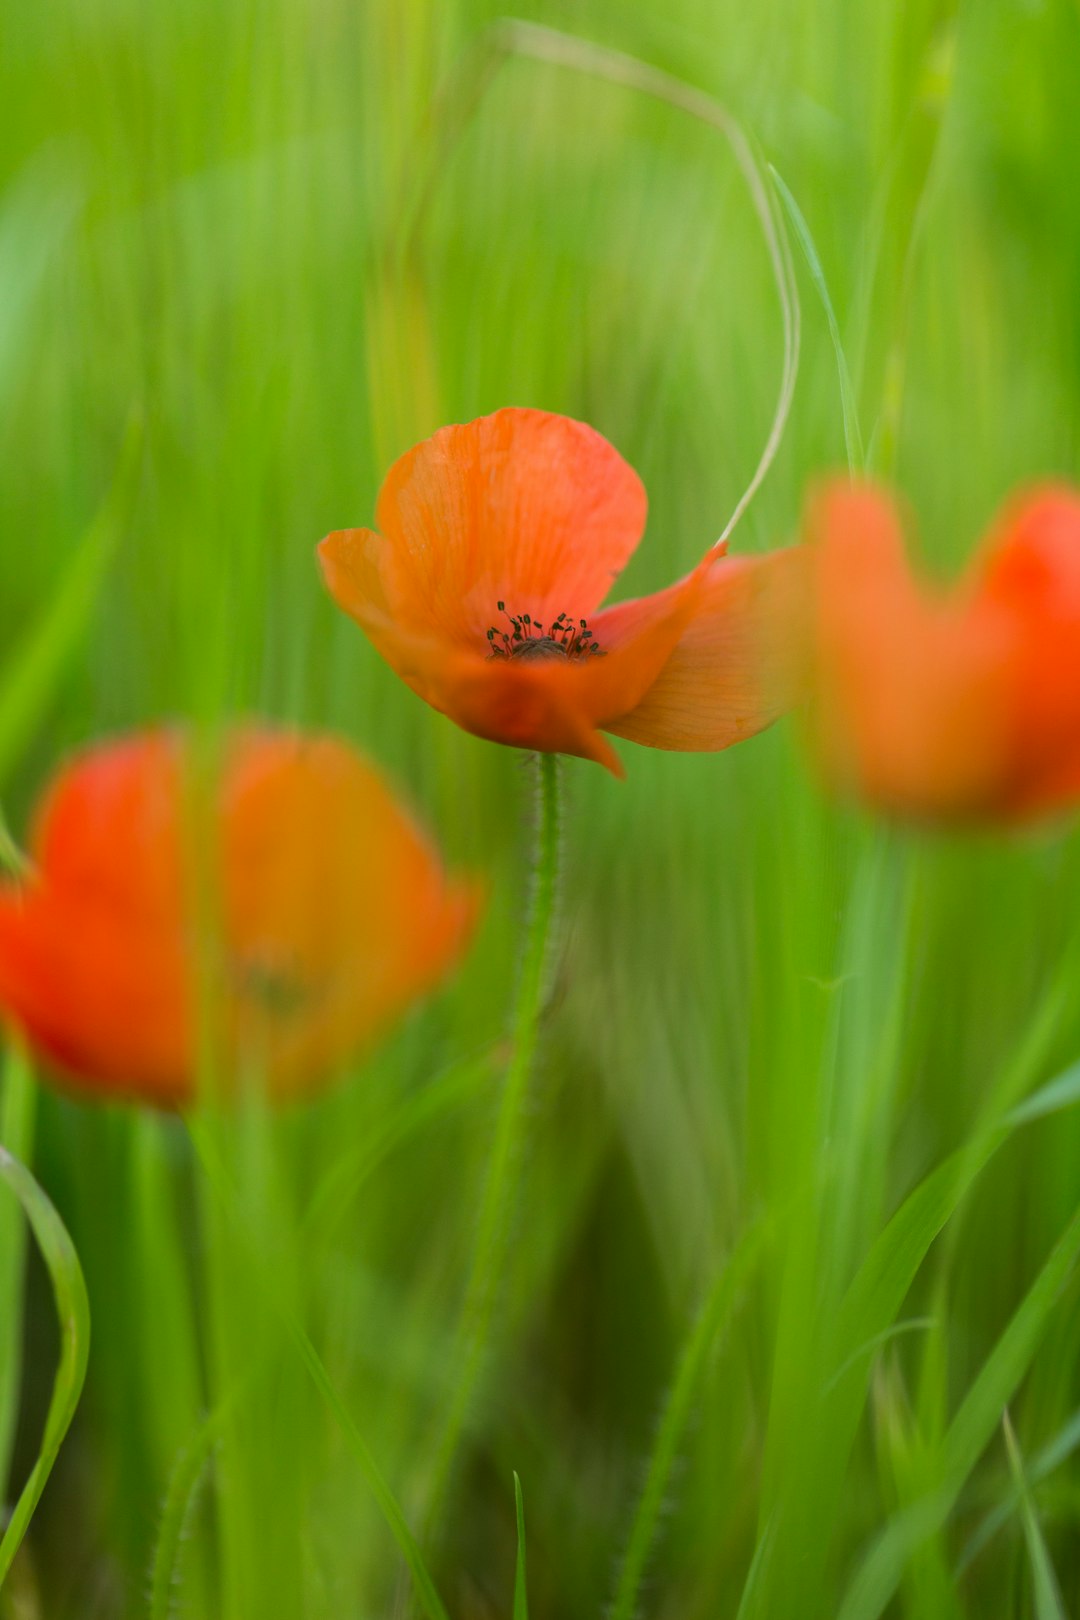 orange flower in green grass during daytime